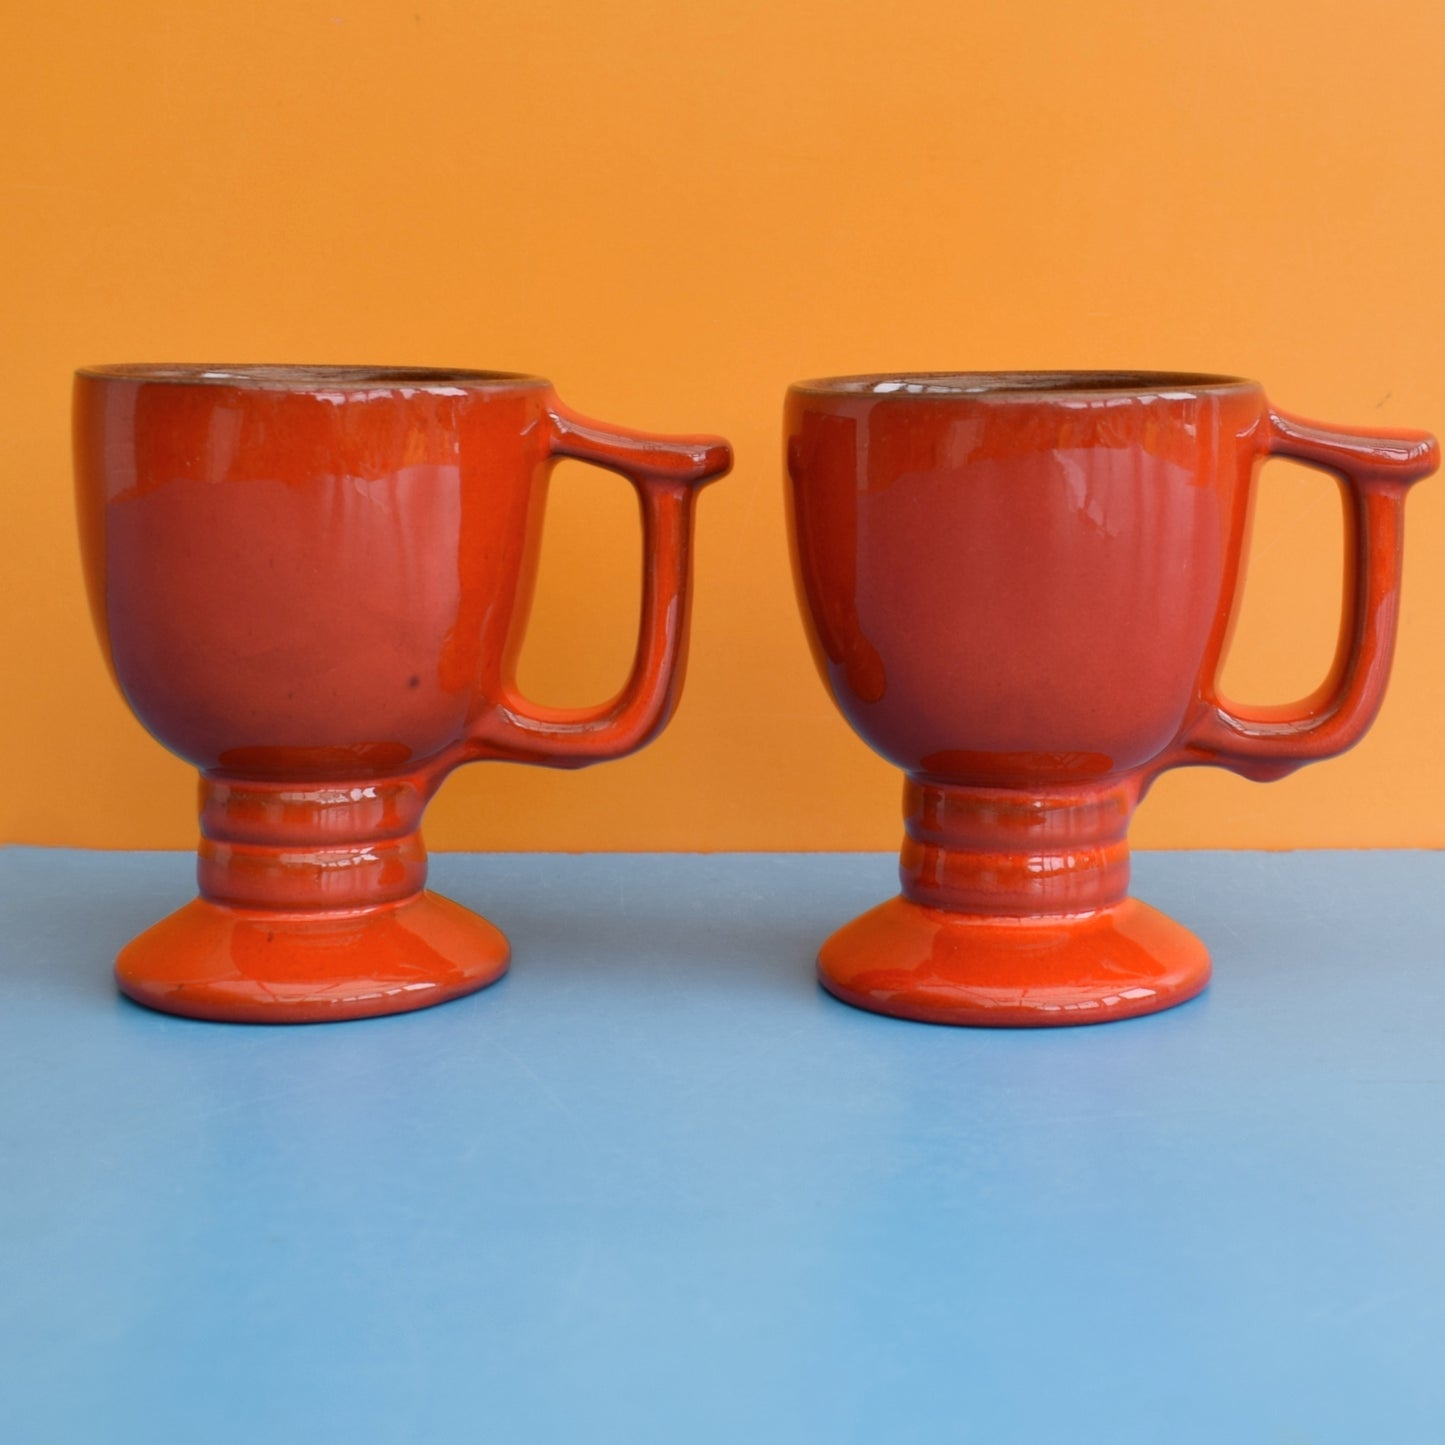 Vintage 1960s Vintage Mugs - Frankoma Orange